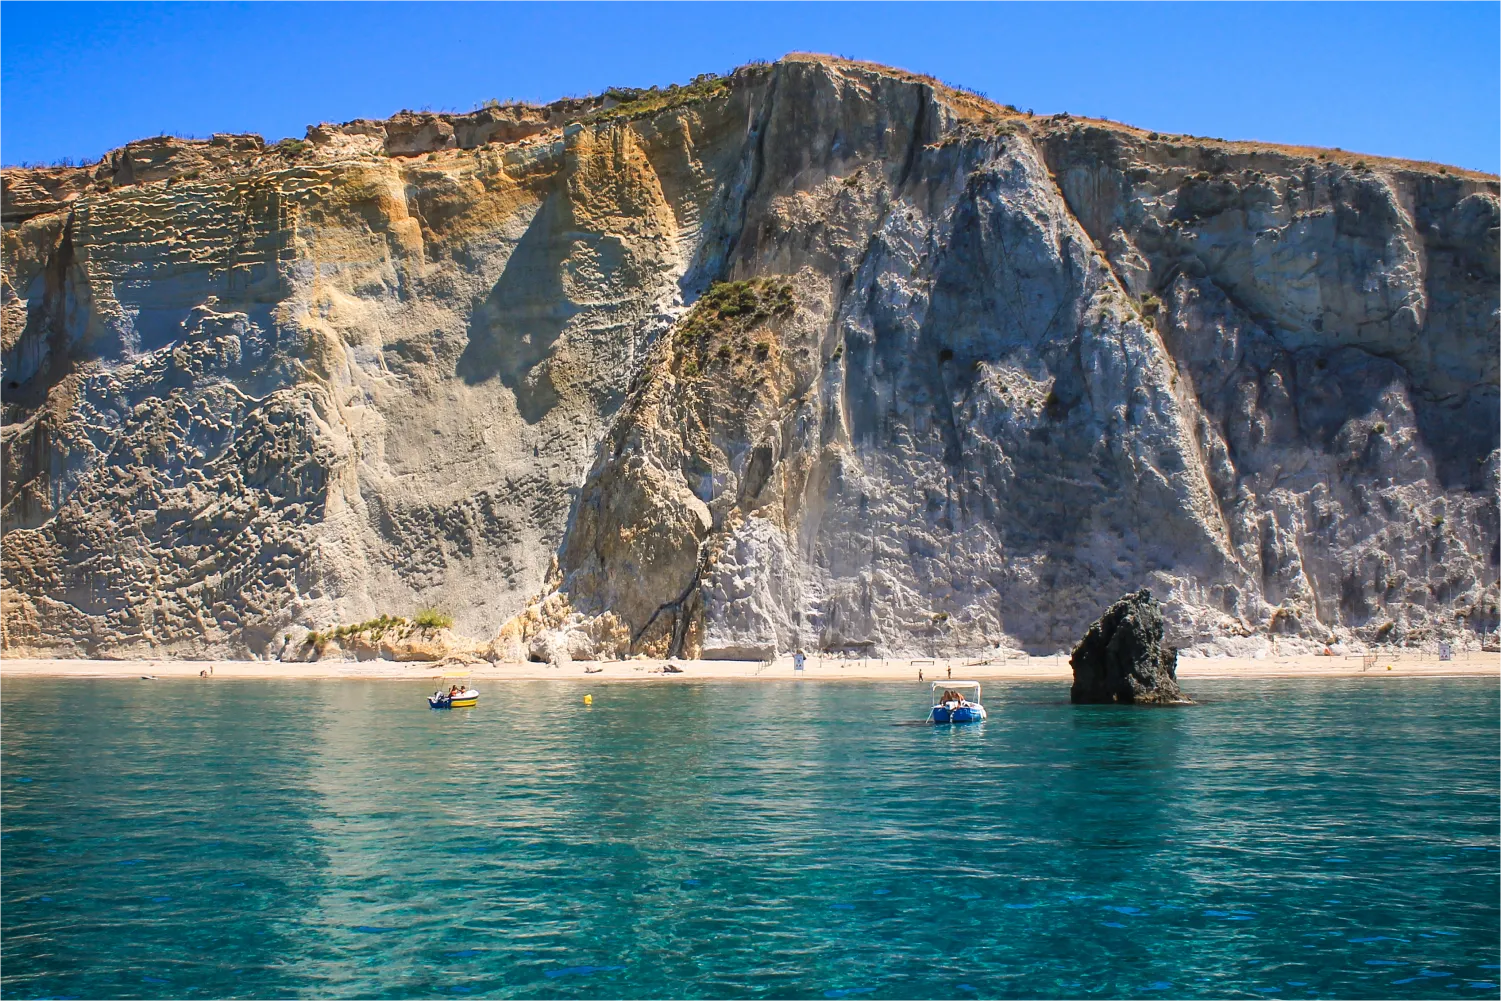 Das schöne Gesicht der Insel Ponza vom kristallklaren blauen Wasser der Chiaia Di Luna aus gesehen